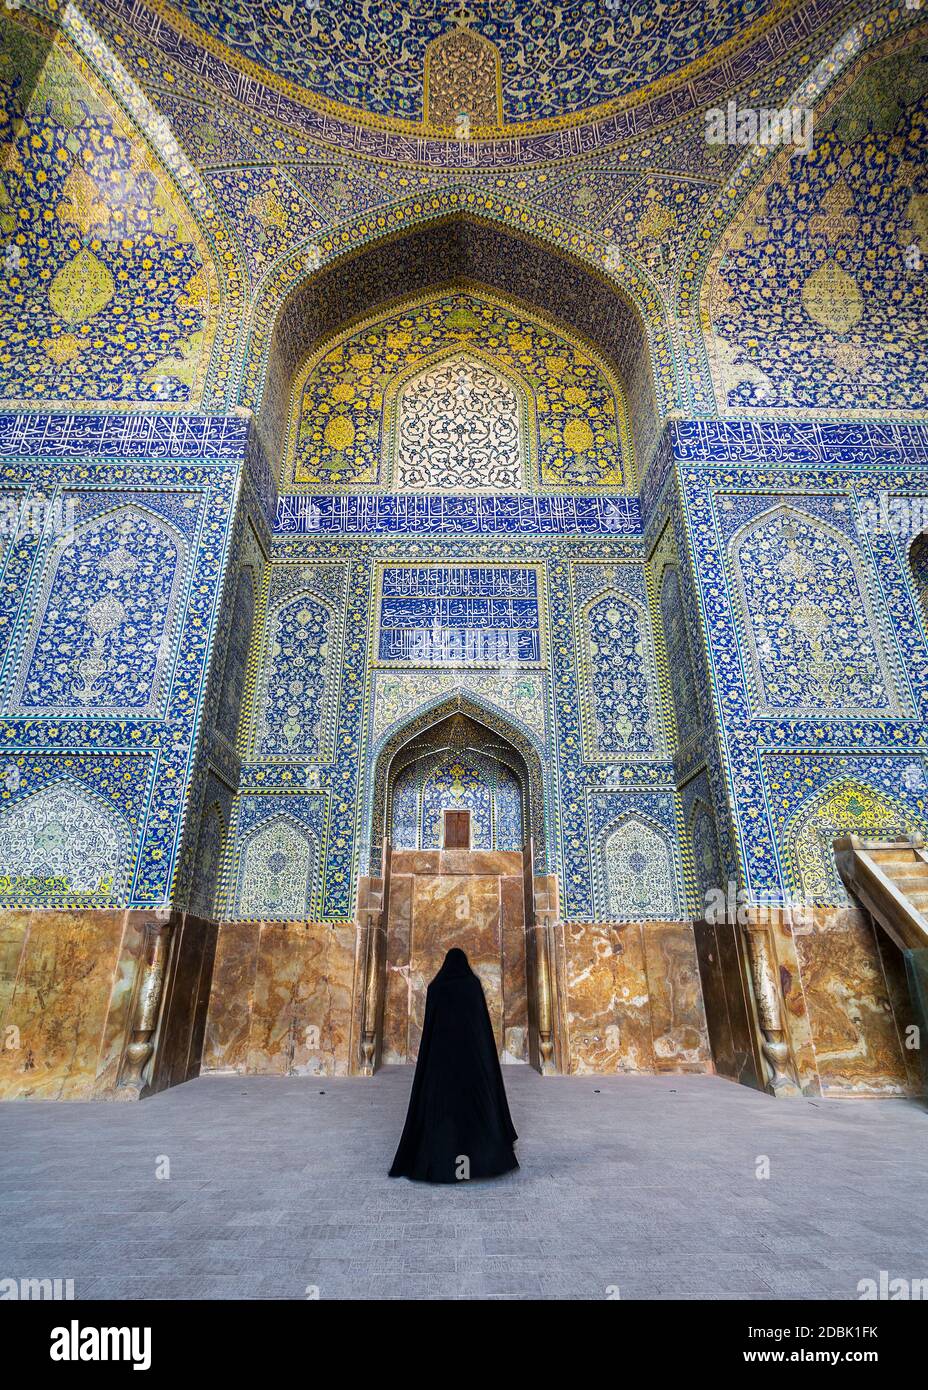 La moschea di Shah, conosciuta anche come la moschea di Imam, è una moschea situata a Isfahan, Iran. Si trova sul lato sud di Piazza Naghsh-e Jahan. Foto Stock